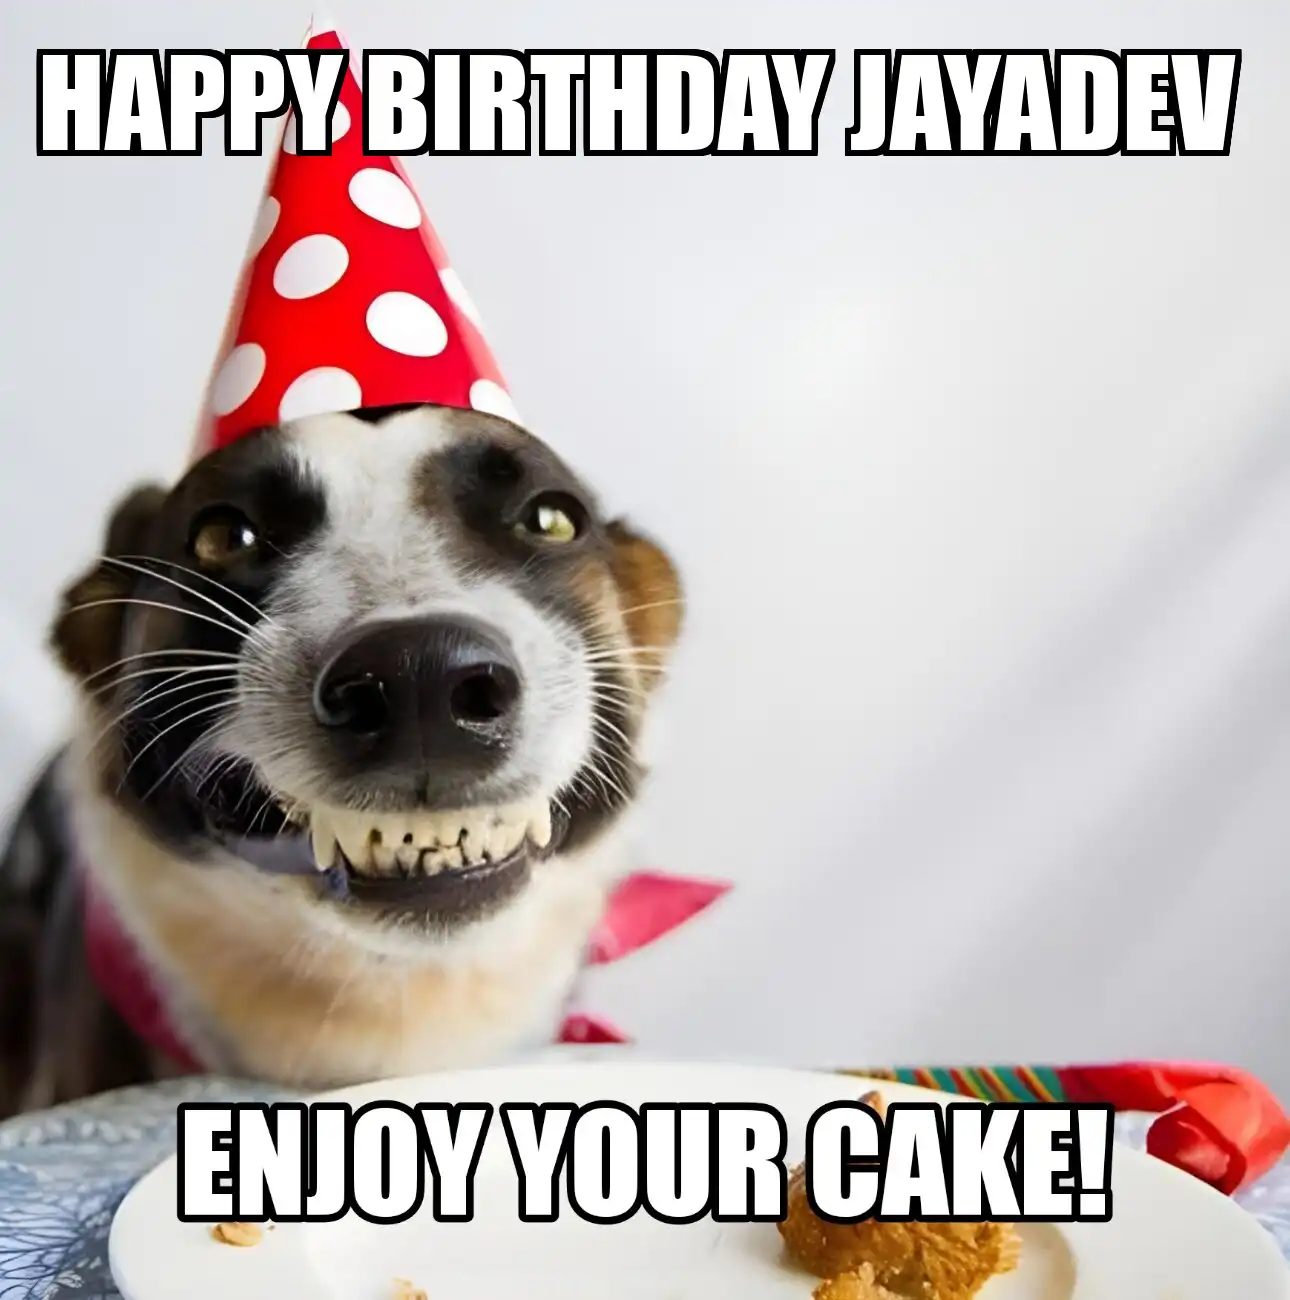 Happy Birthday Jayadev Enjoy Your Cake Dog Meme